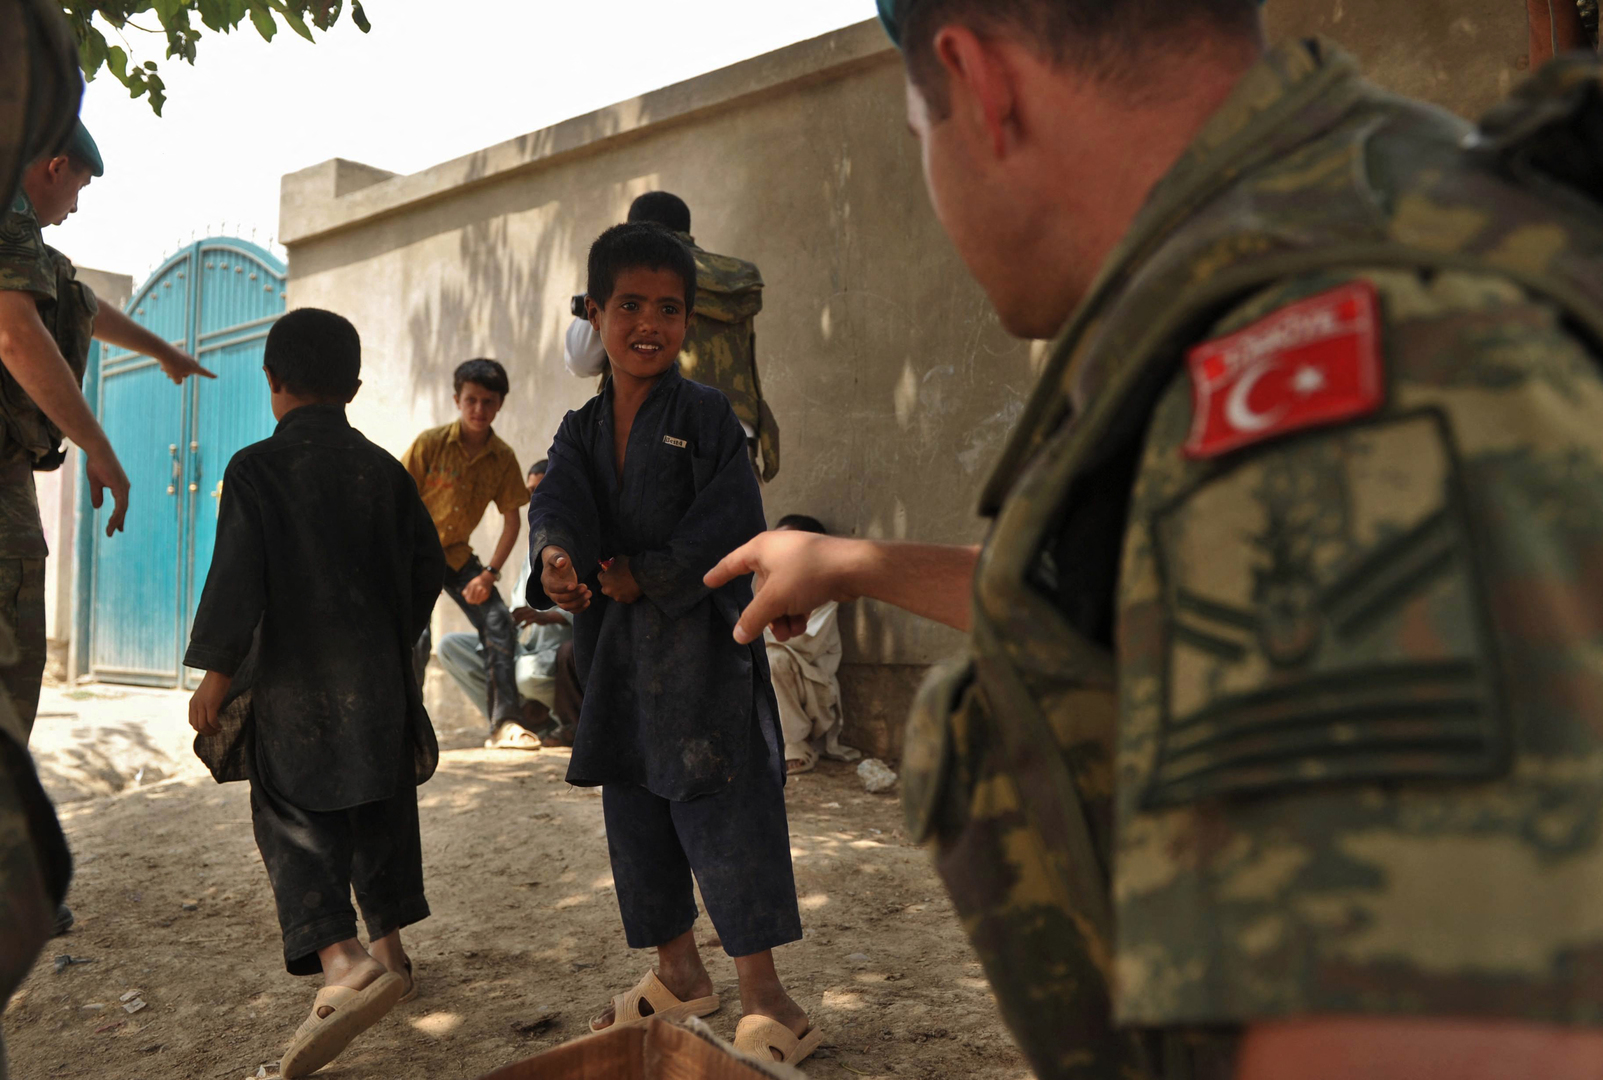 طالبان تطالب تركيا بسحب قواتها من أفغانستان مثل بقية الدول الأعضاء بالناتو